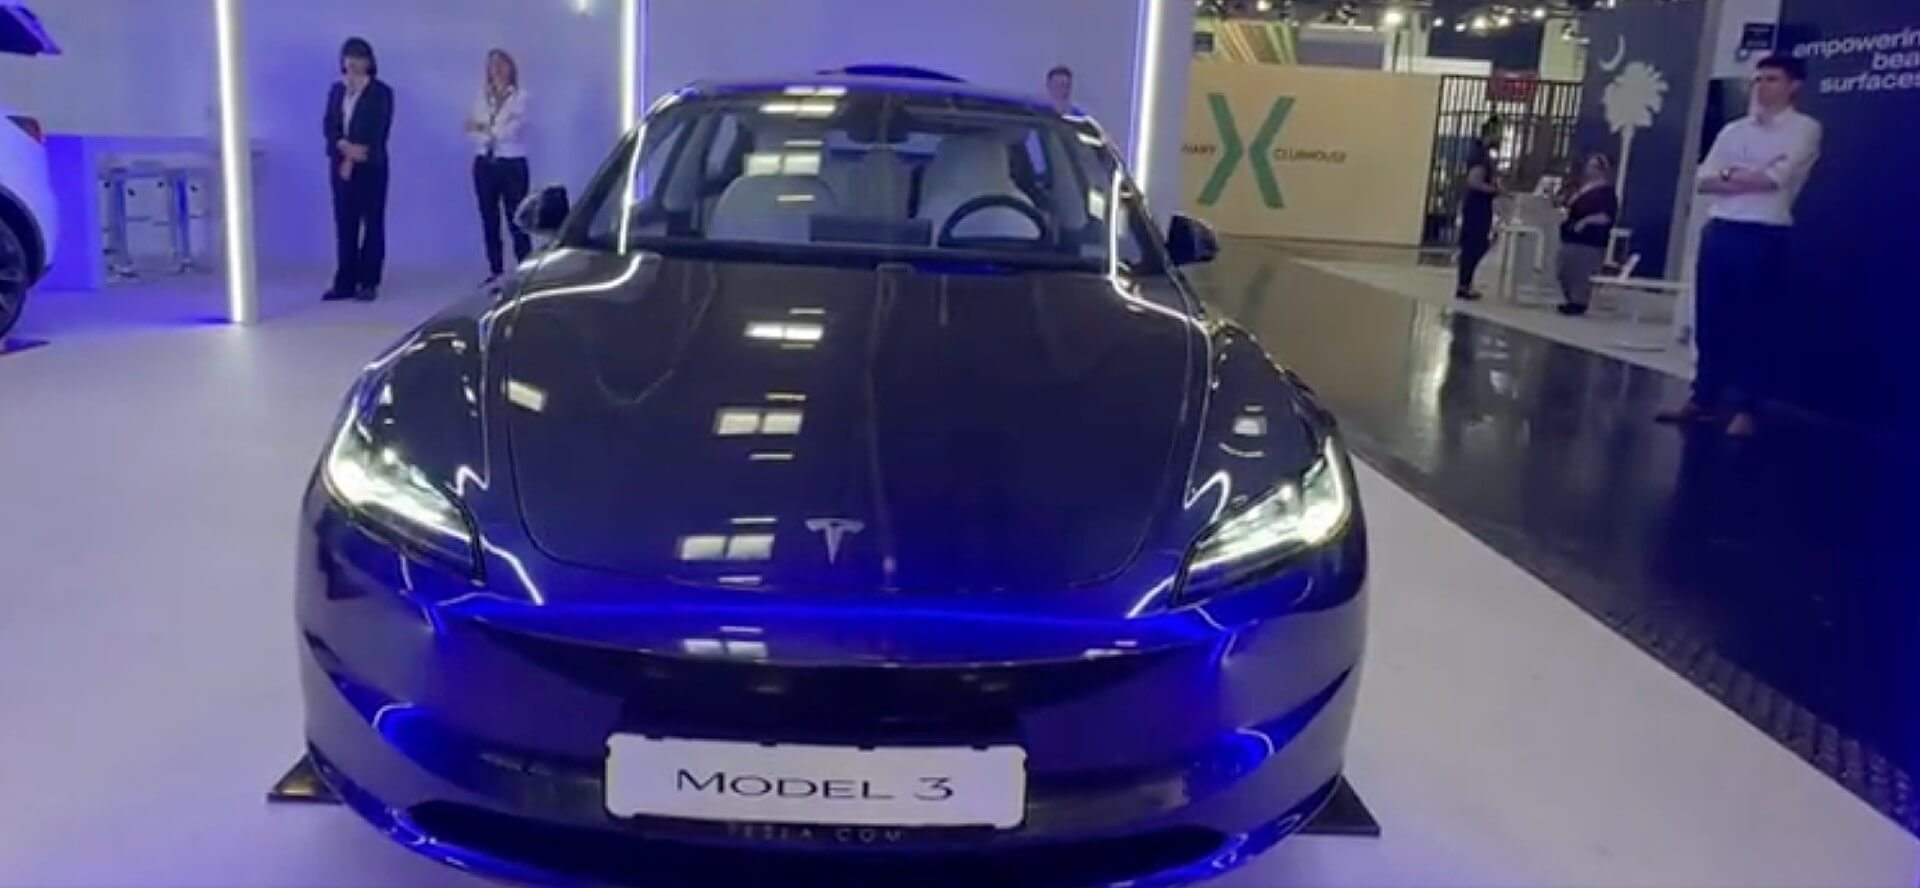 Tesla riporta in vita un vecchio uovo di Pasqua con la sua nuova Model 3